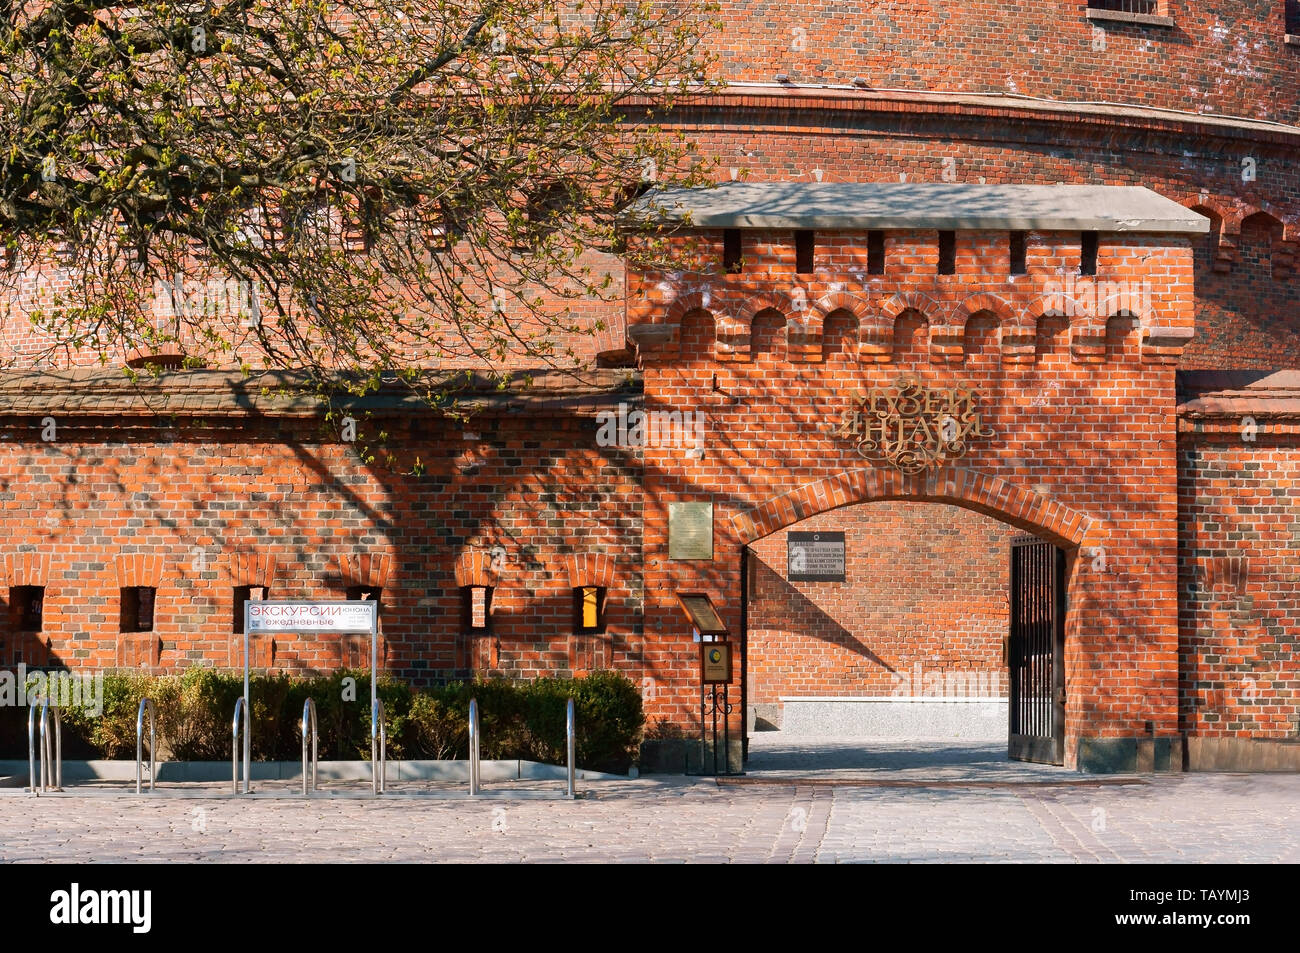 Kaliningrad regional amber Museum, don Tower, Rossgarten gate, Kaliningrad, Russia, 13 April 2019 Stock Photo